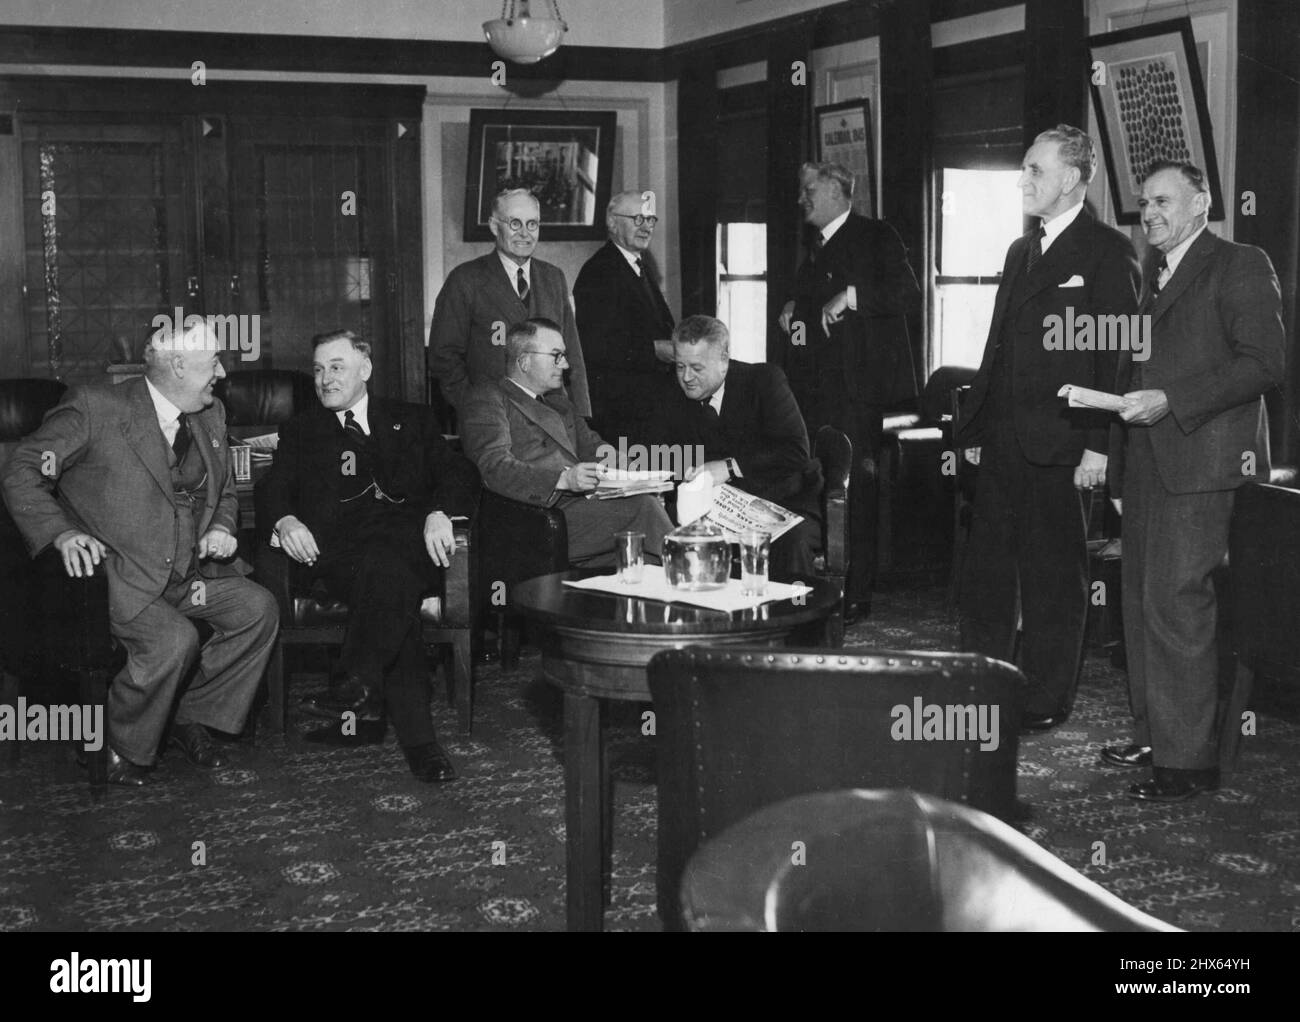 Les sénateurs travaillistes de gauche sont les sénateurs A. Finlay, T.M., qui ont la plus confortable salle du parti à la Chambre Nichola, S.K. Amour, J.J. Arnold, S.W. O'Flaherty, R.E. Clothier (Govt.Whip), G. Brown, D.M. Grant, B. Courtice (président des commissions). 18 janvier 1950. Banque D'Images